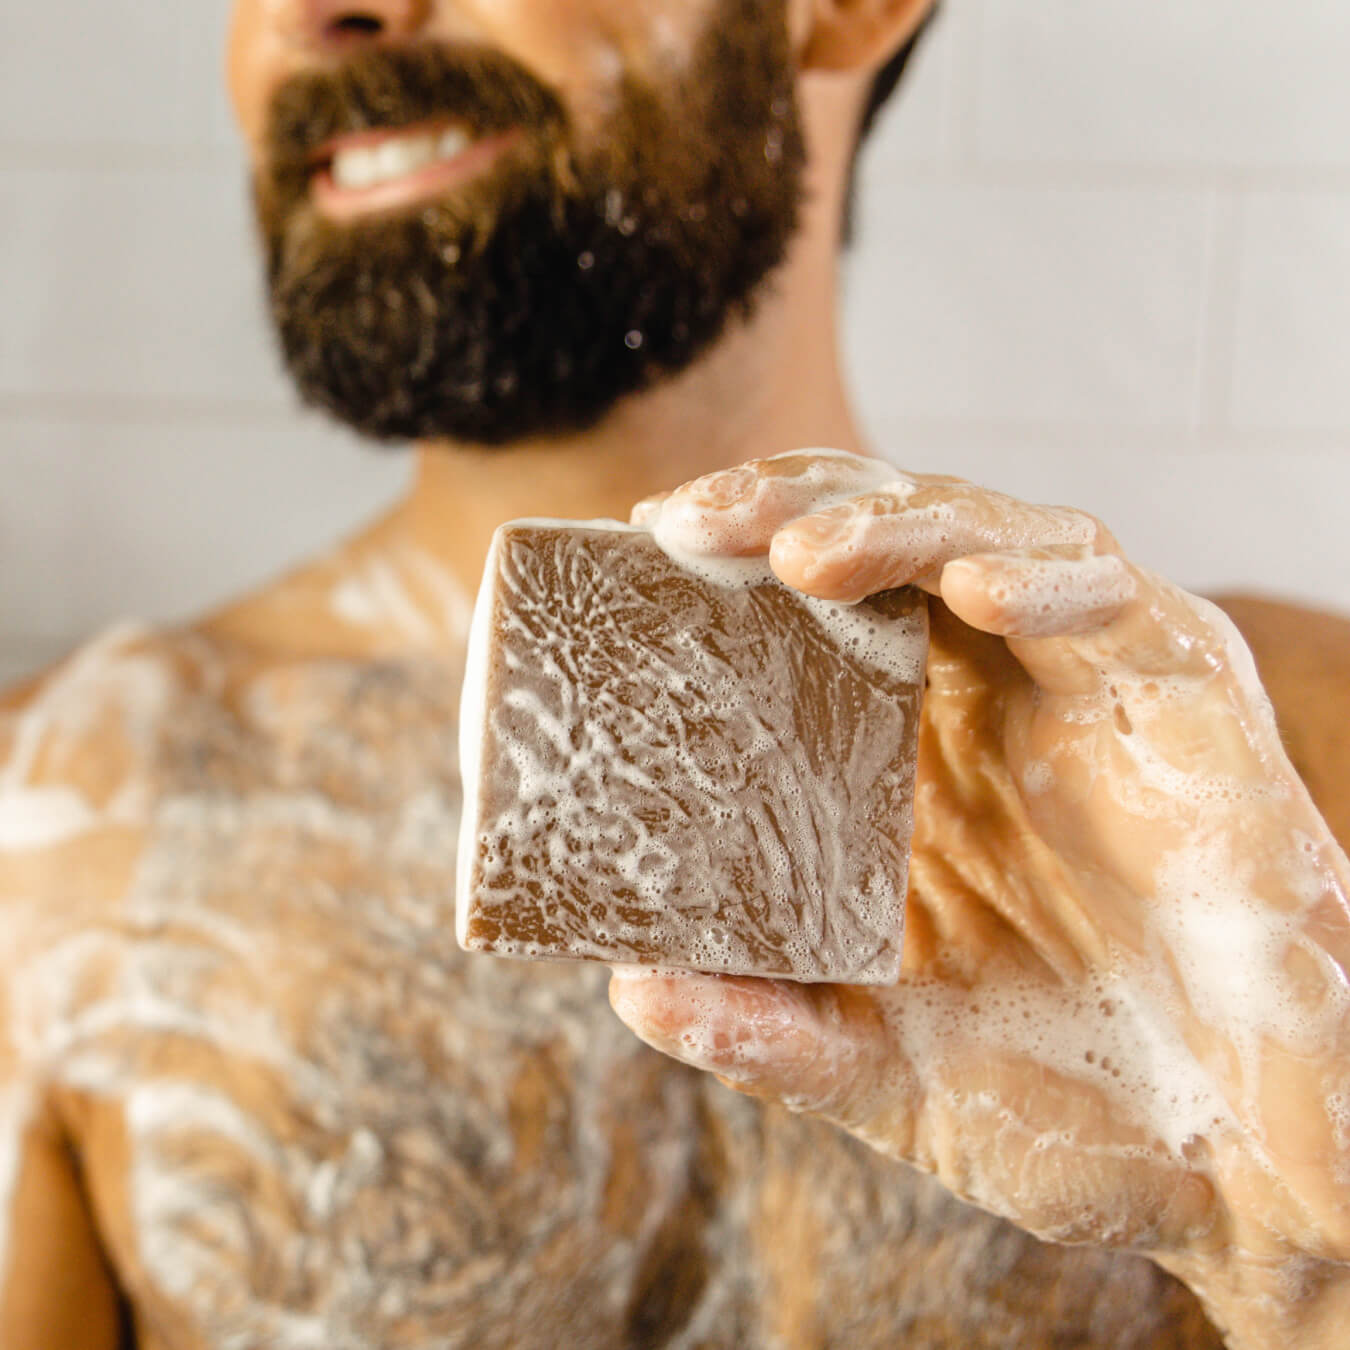  Dr. Squatch Men's Face Wash and Bar Soap Bundle